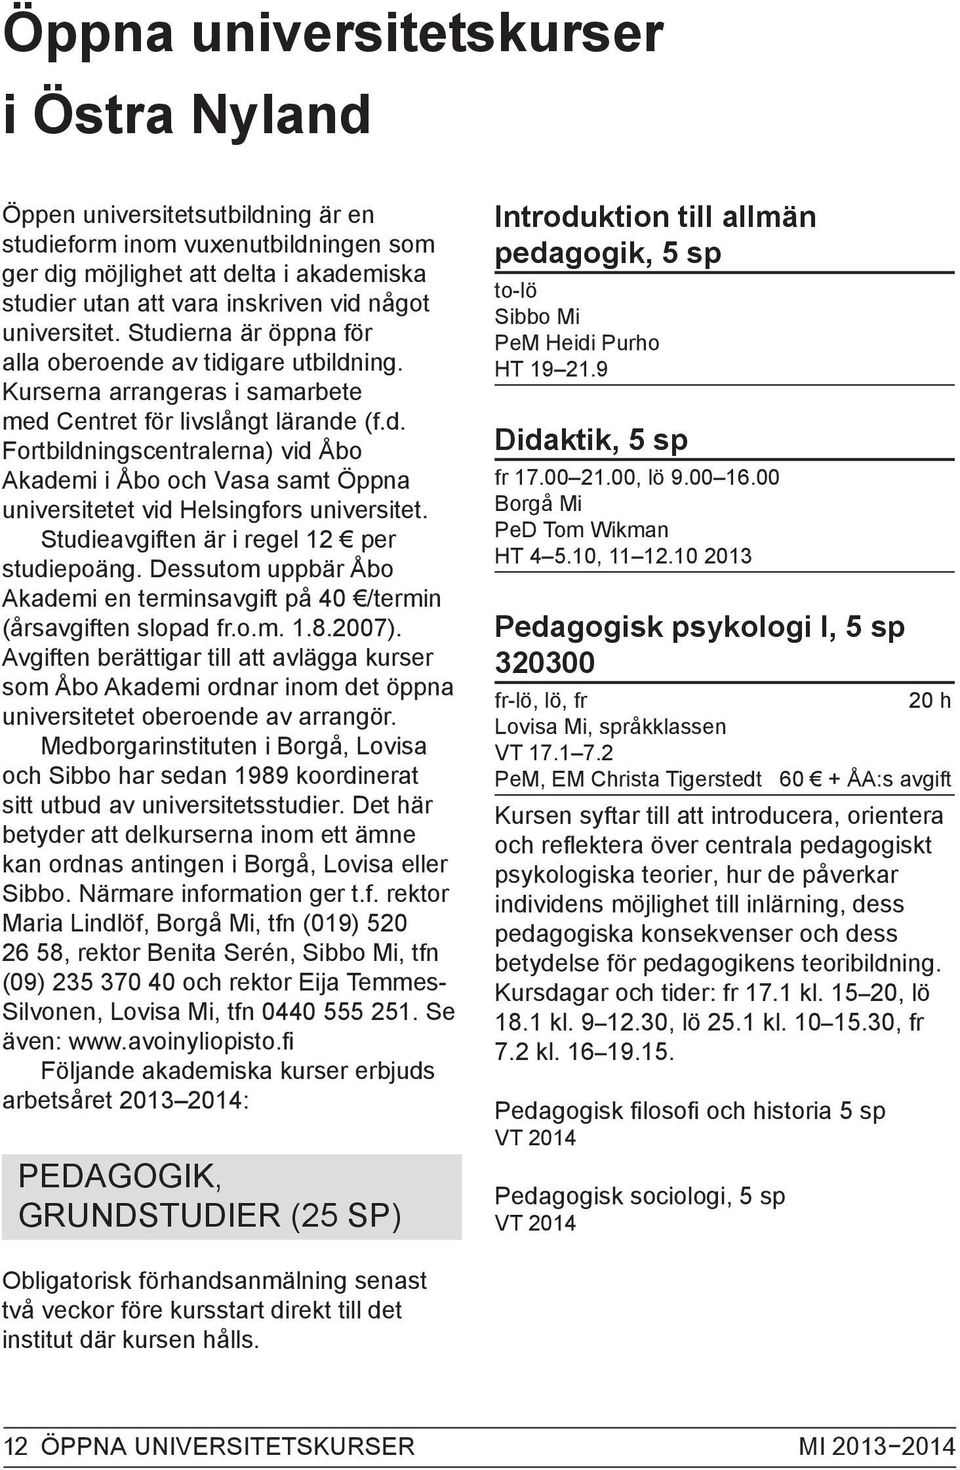 Studieavgiften är i regel 12 per studiepoäng. Dessutom uppbär Åbo Akademi en terminsavgift på 40 /termin (årsavgiften slopad fr.o.m. 1.8.2007).